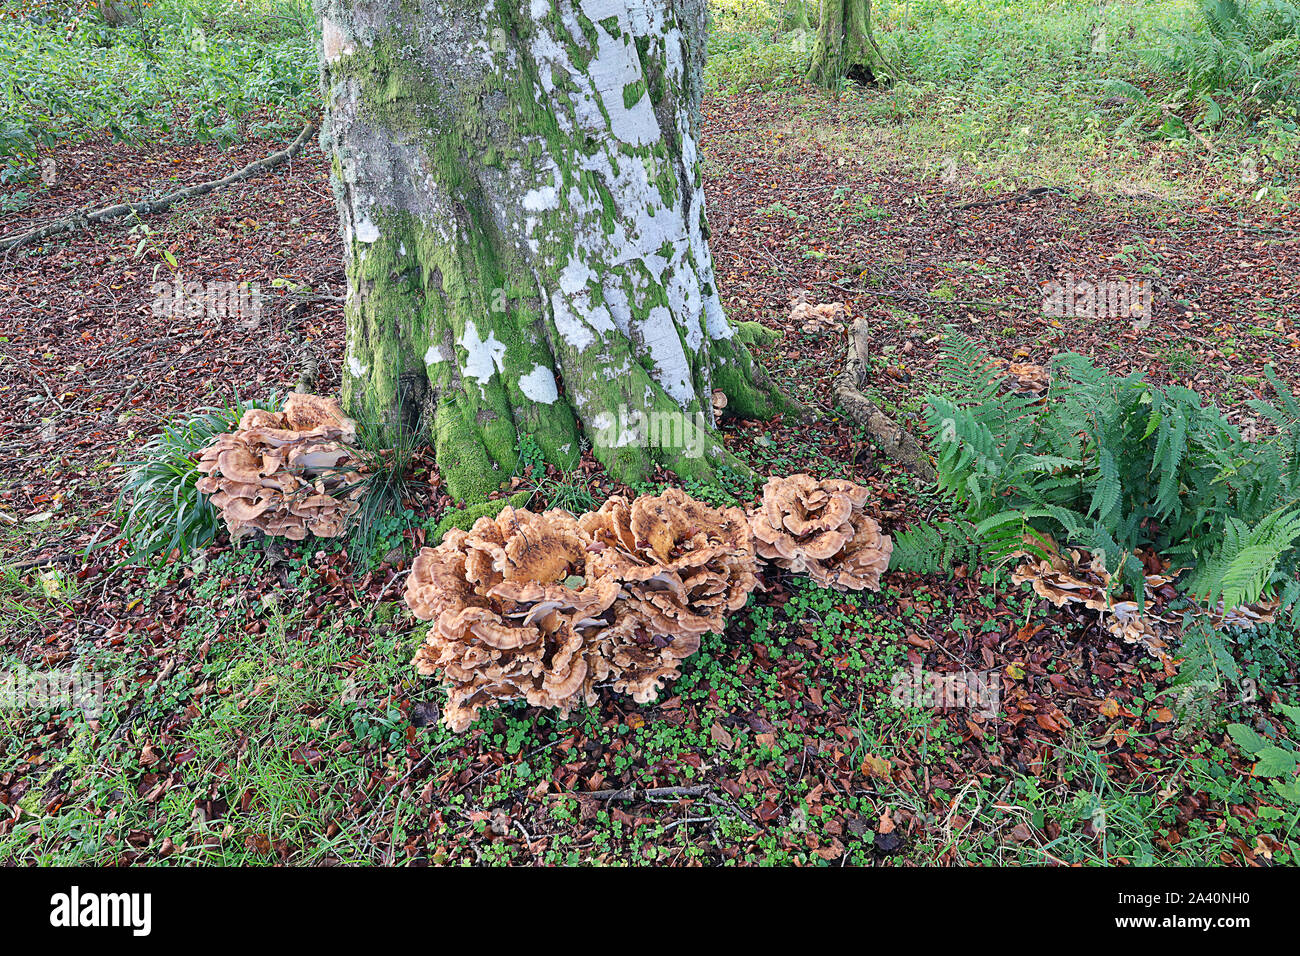 Meripilus giganteus Meripilus giganteus is a polypore fungus in the family Meripilaceae. Stock Photo